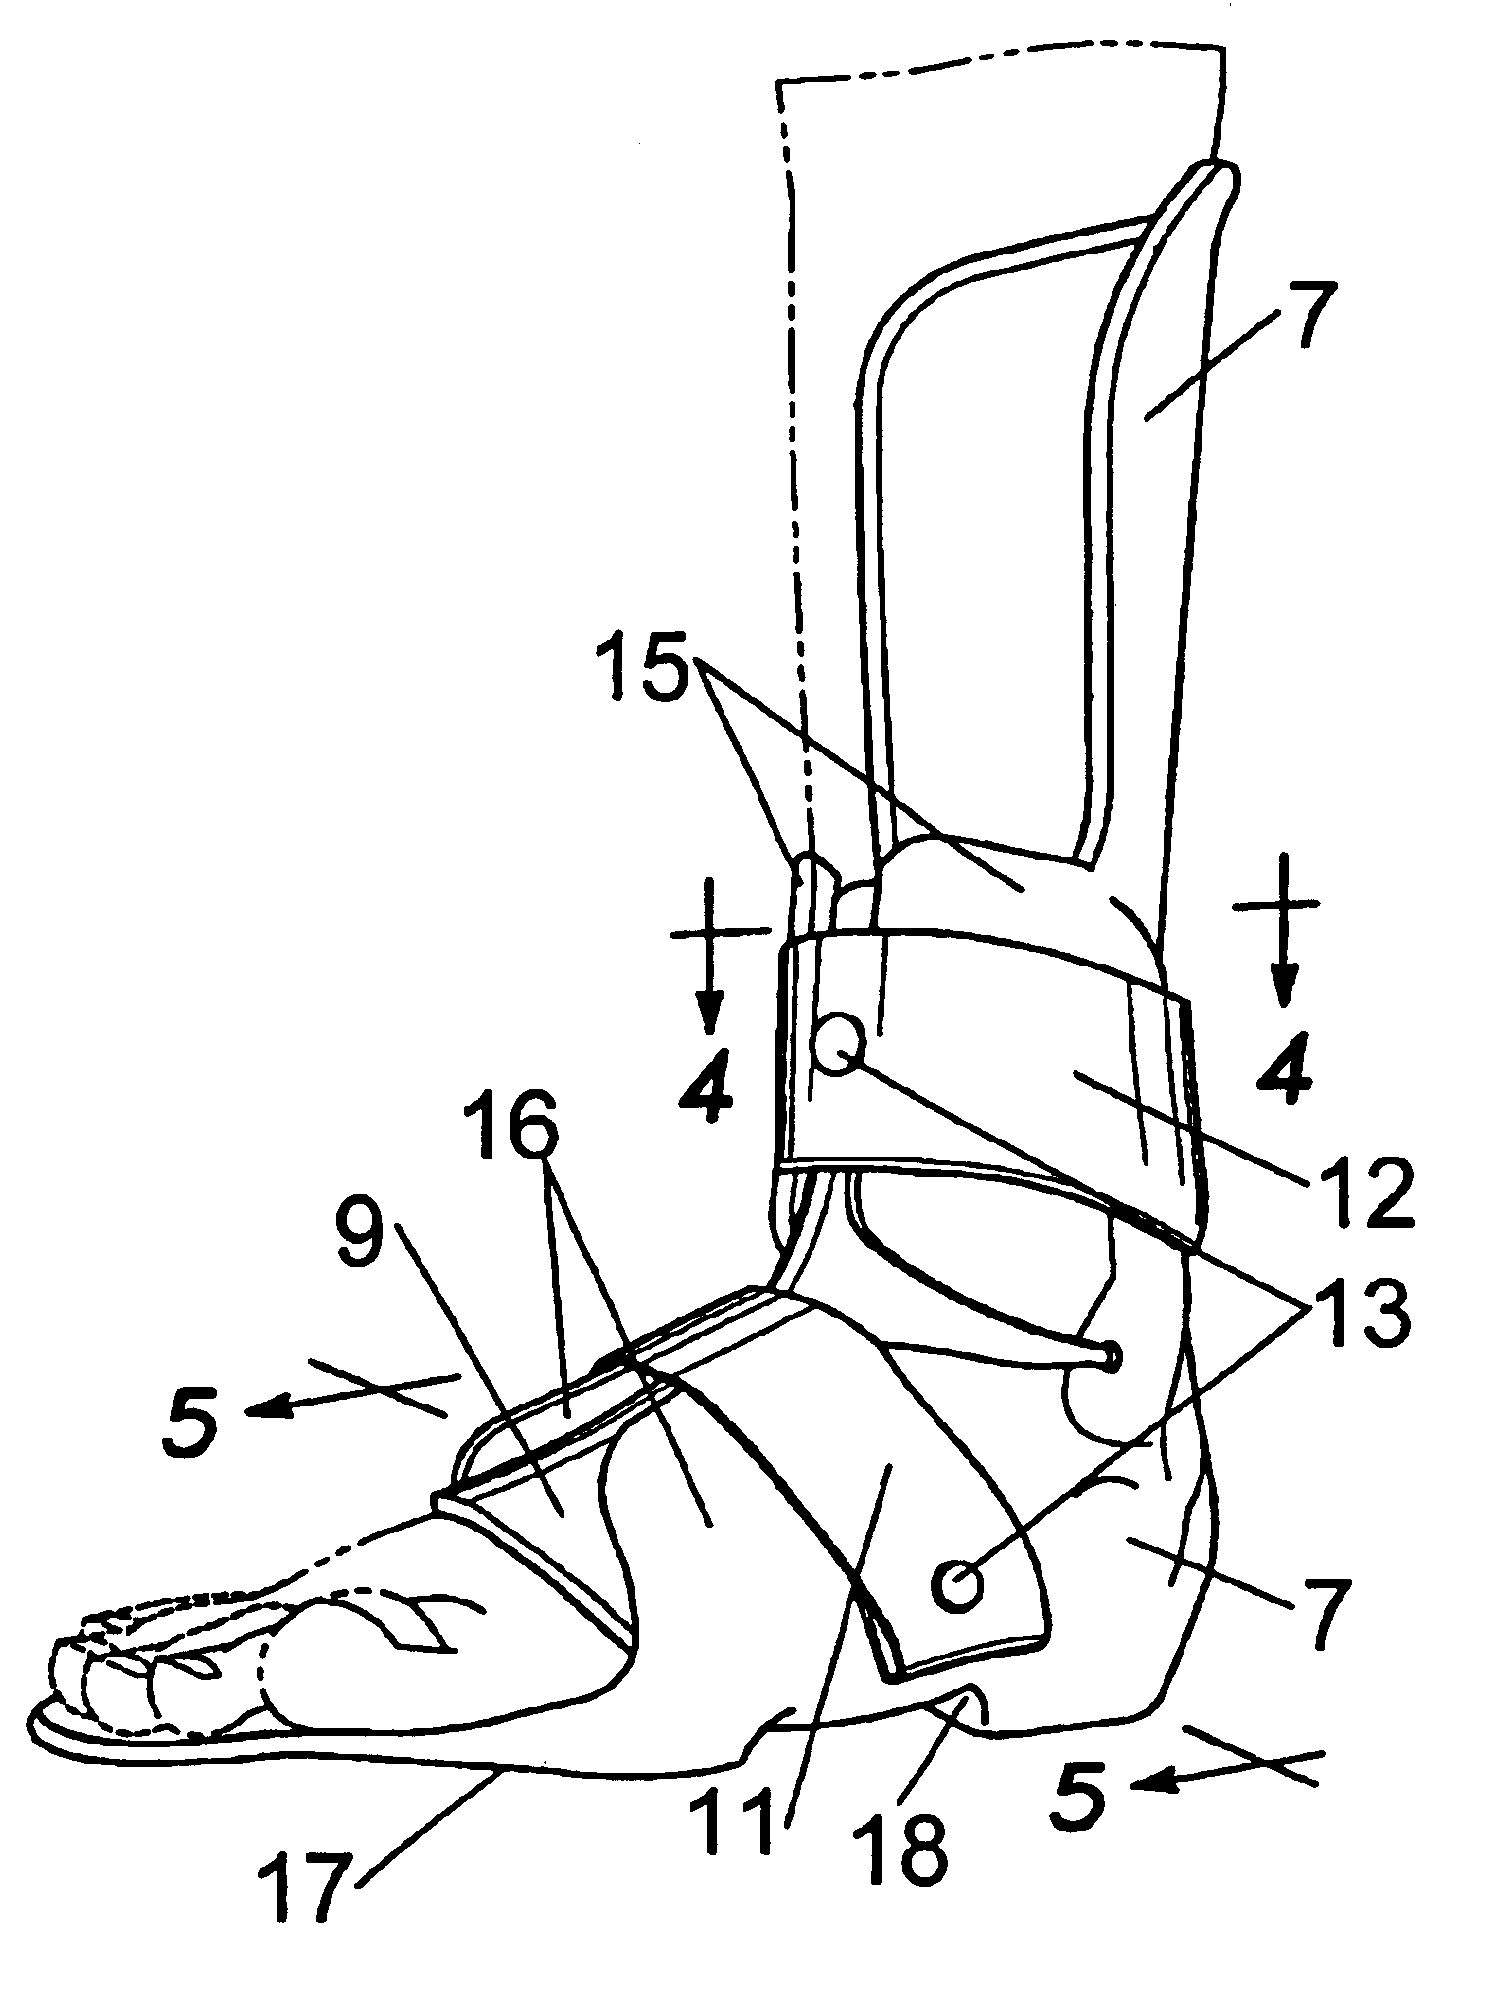 D-DAFO (Deroos-dynamic ankle foot orthosis)